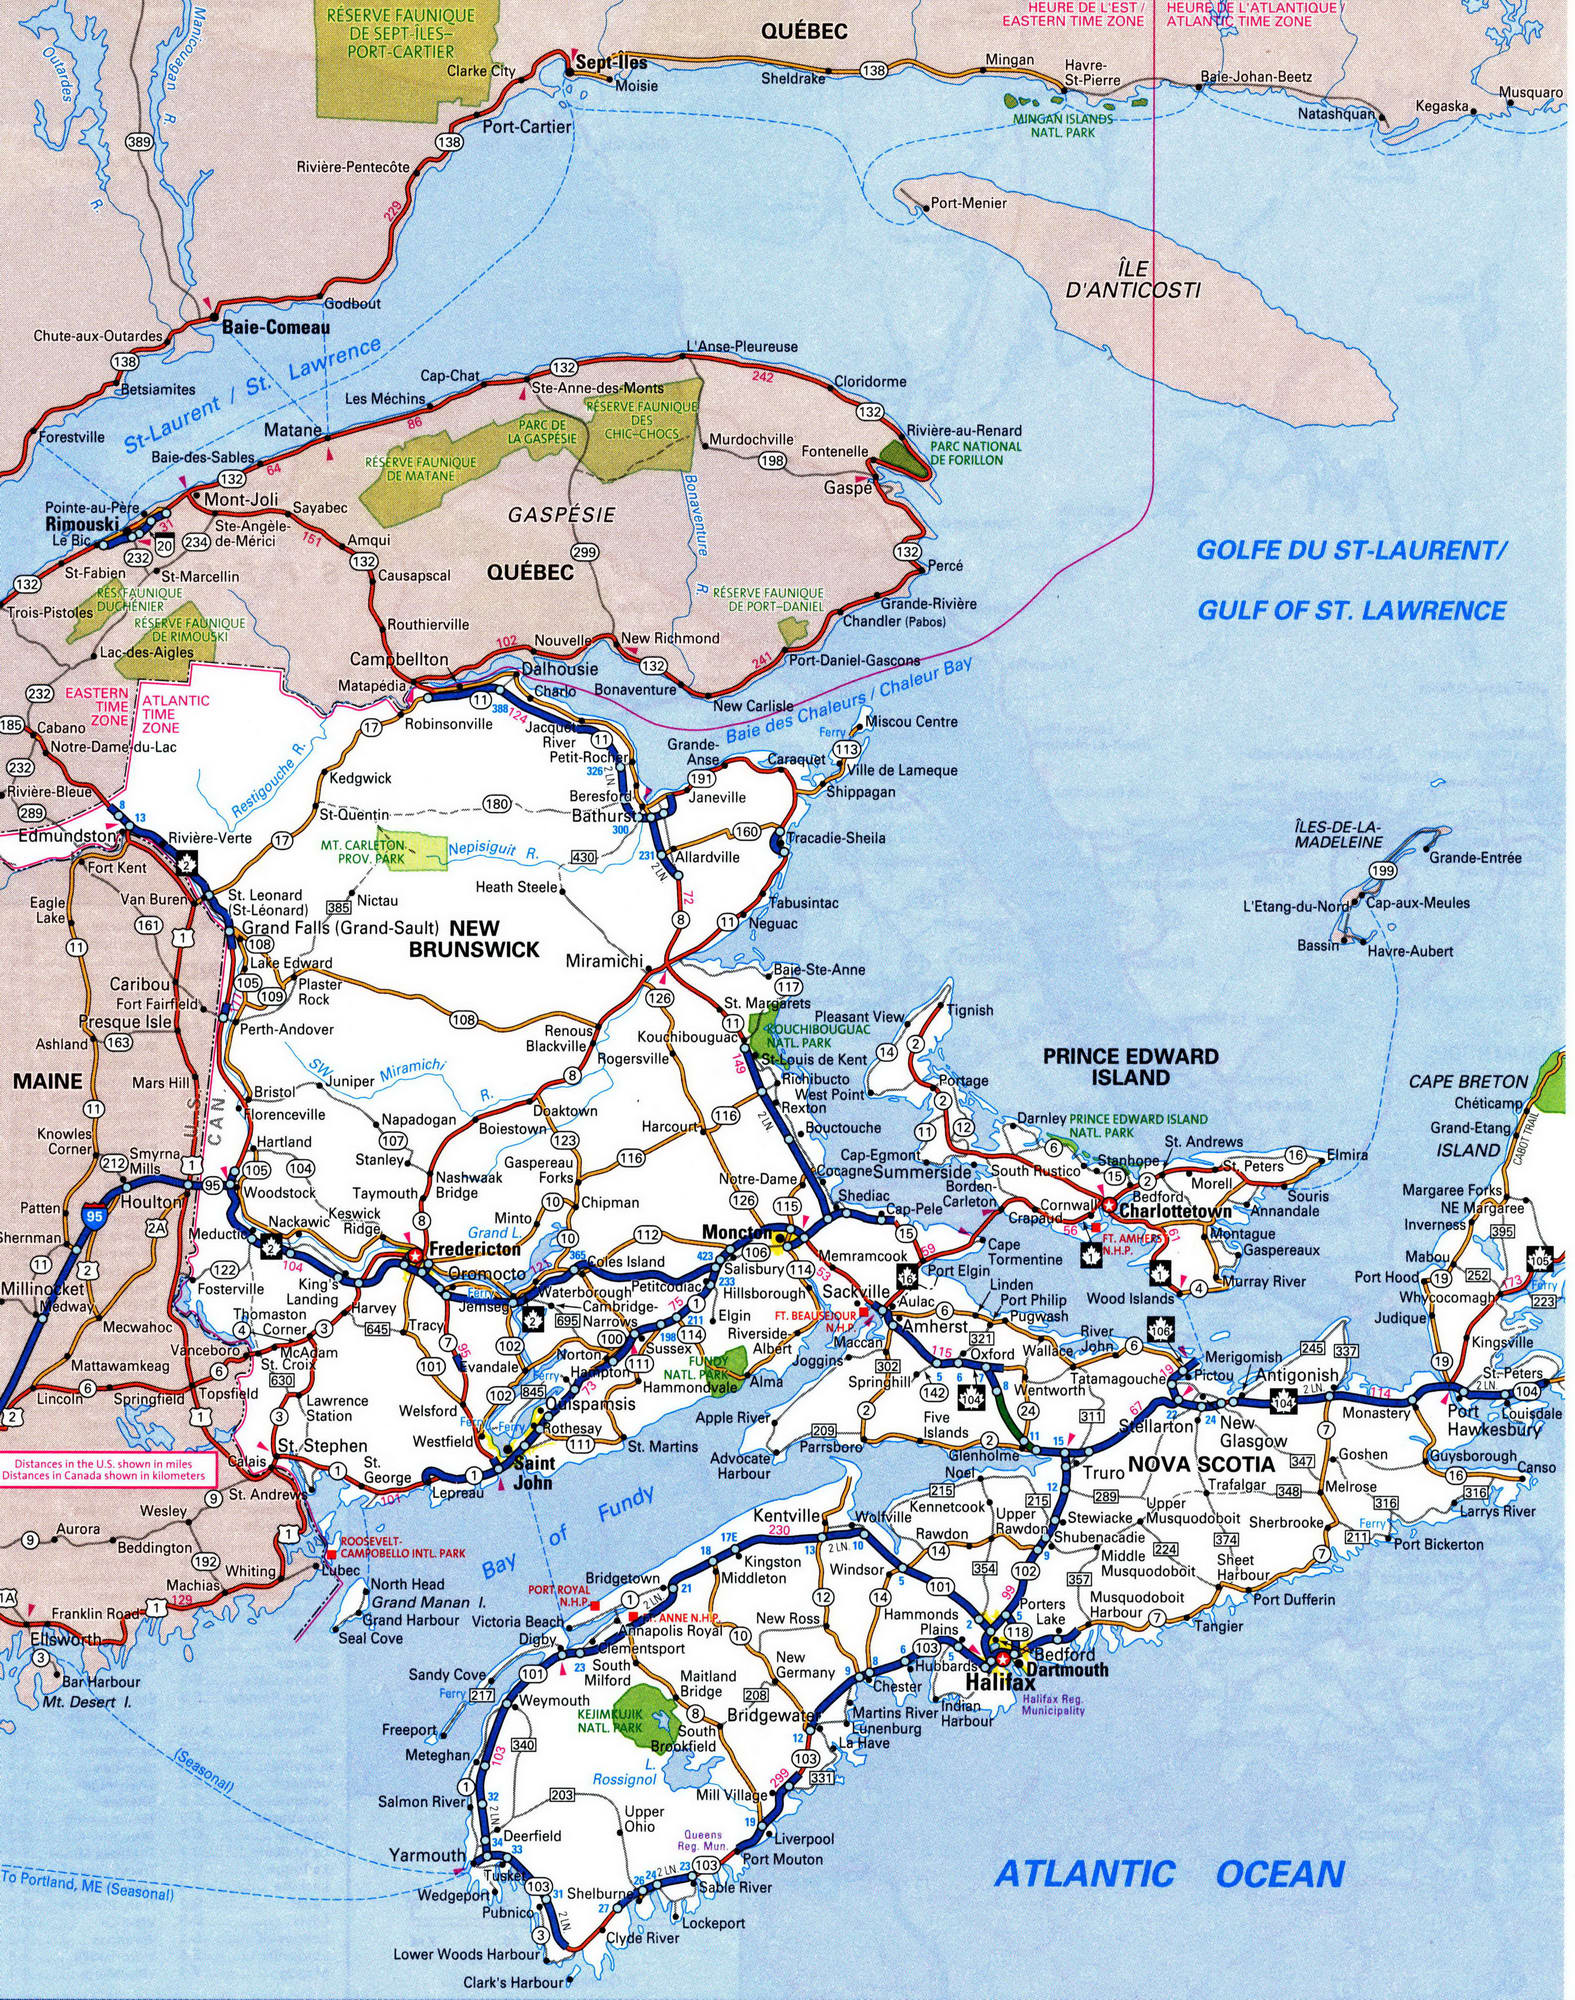 Nova Scotia detailed map